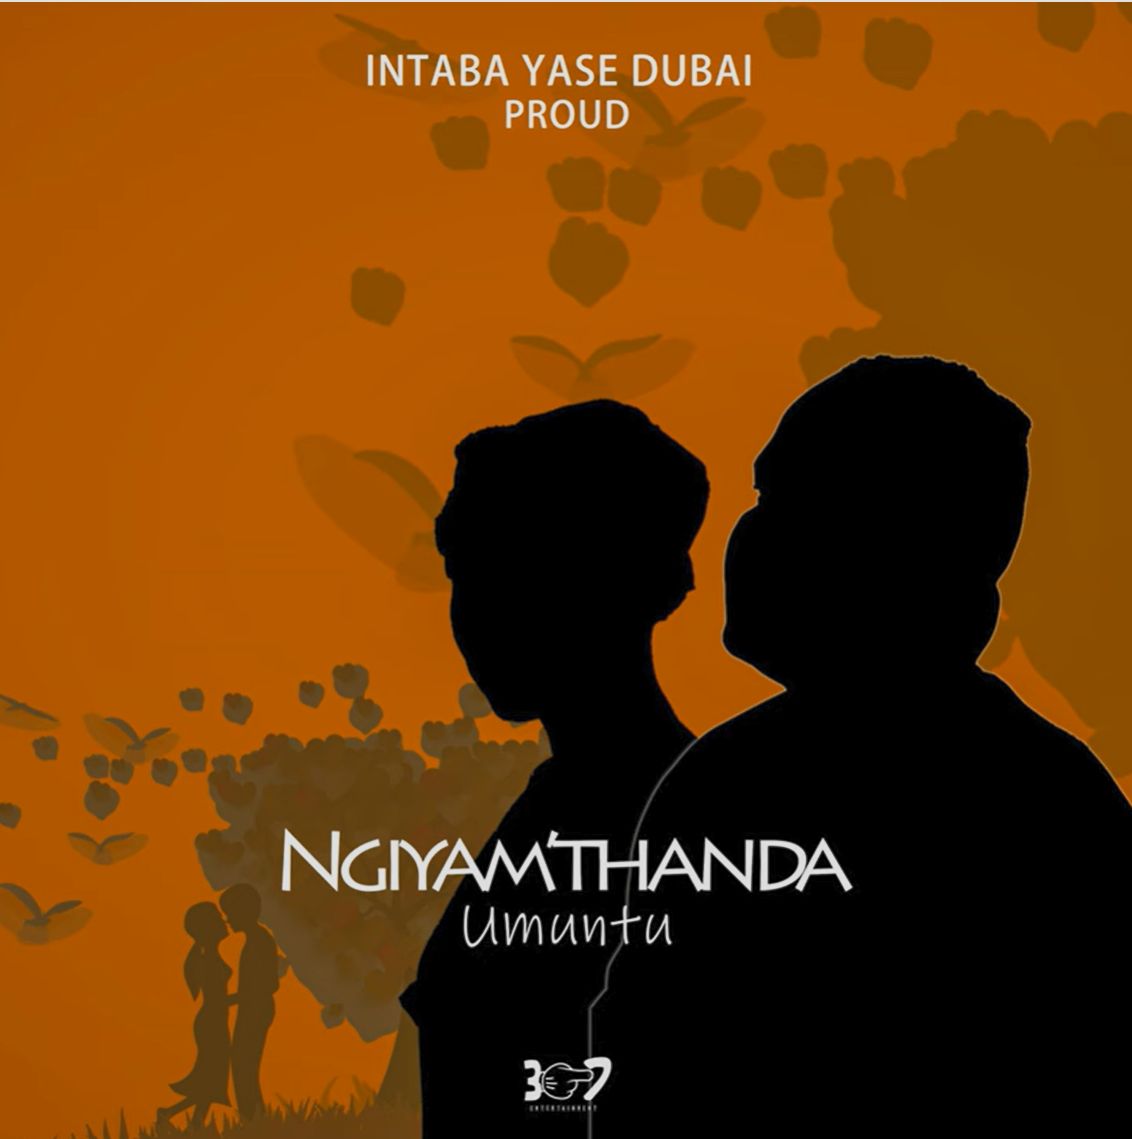 Intaba Yase Dubai - Ngiyamthanda Umuntu Ft. Proud 1